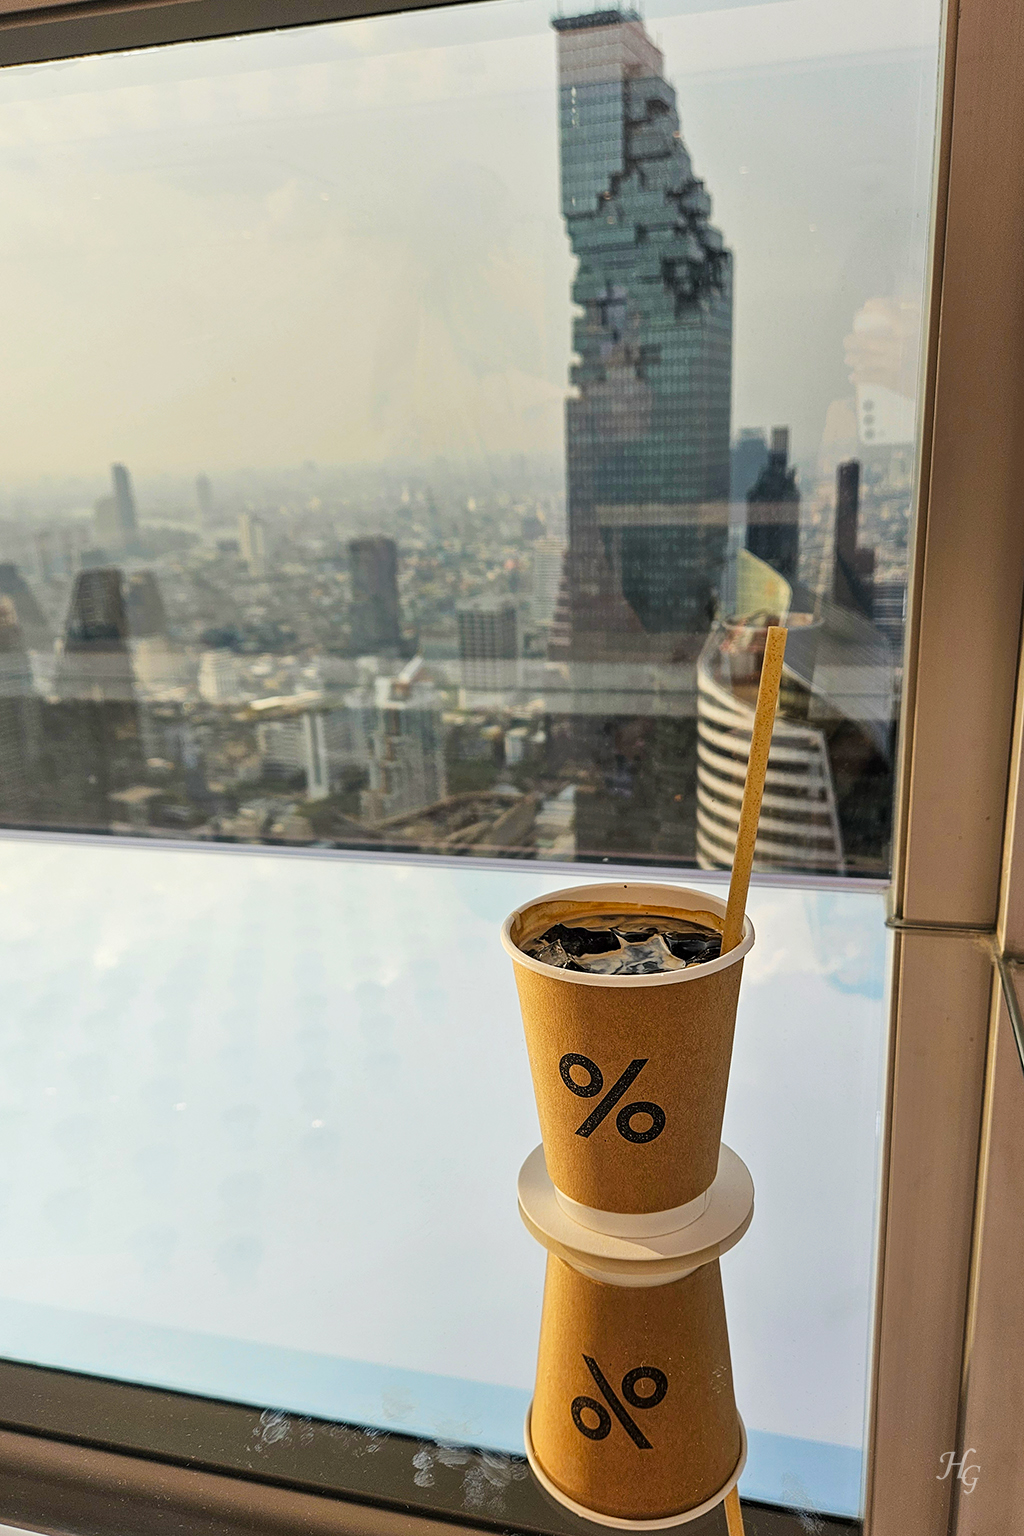 응커피 컵에 담긴 커피와 유리창 너머 보이는 마하나콘 건물